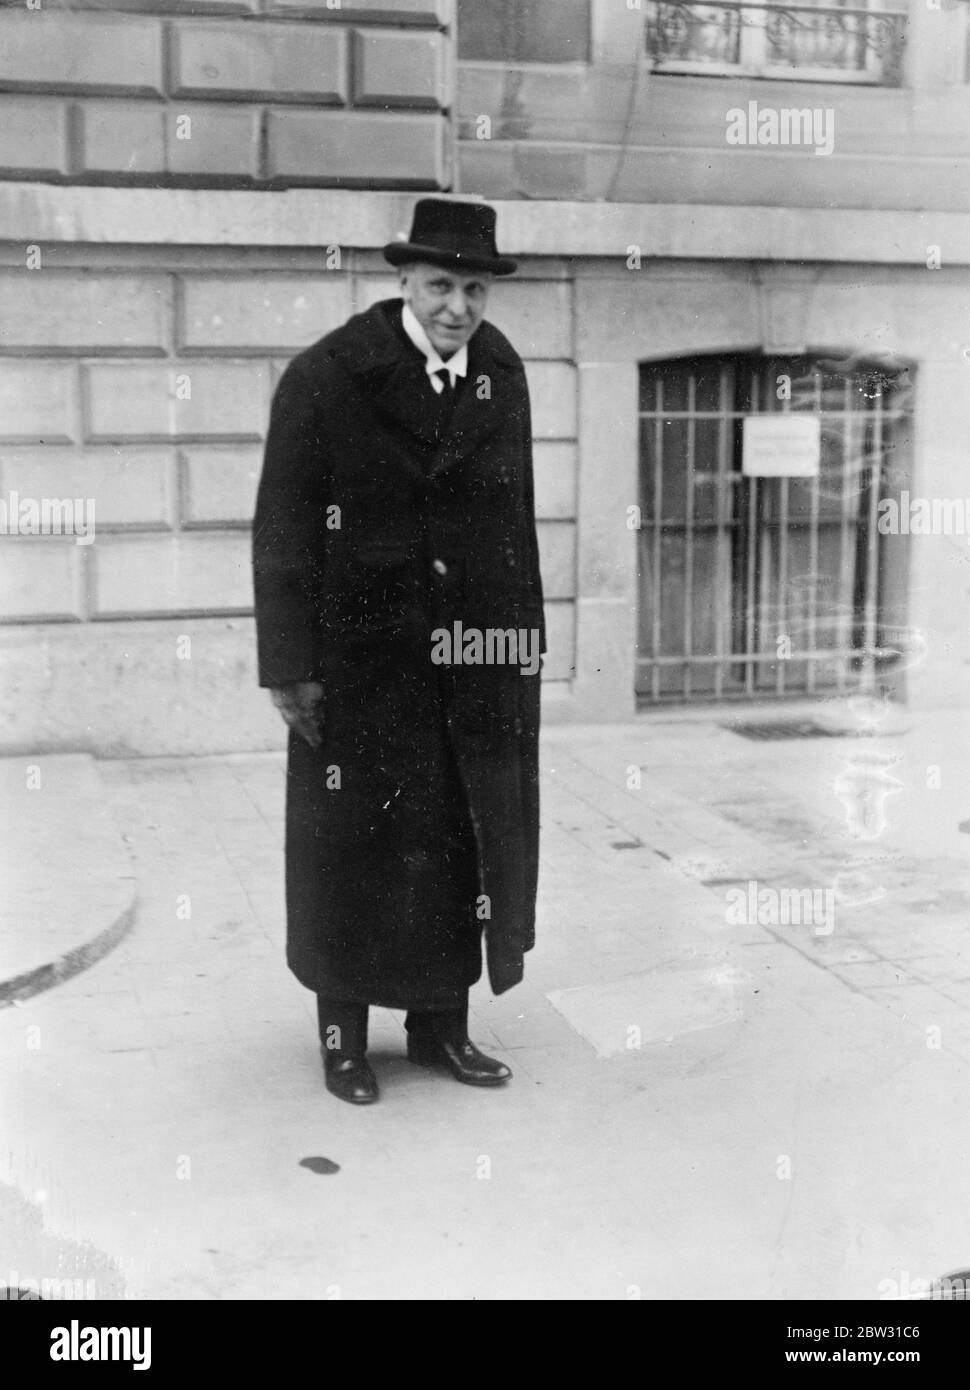 Lord Cecil arrive à Genève pour la Conférence du désarmement . Lord Cecil , qui est l'un des délégués britanniques à la Conférence internationale du désarmement qui s'ouvre le 2 février , est arrivé à Genève . Lord Cecil à l'arrivée à Genève pour la Conférence du désarmement . 27 janvier 1932 Banque D'Images